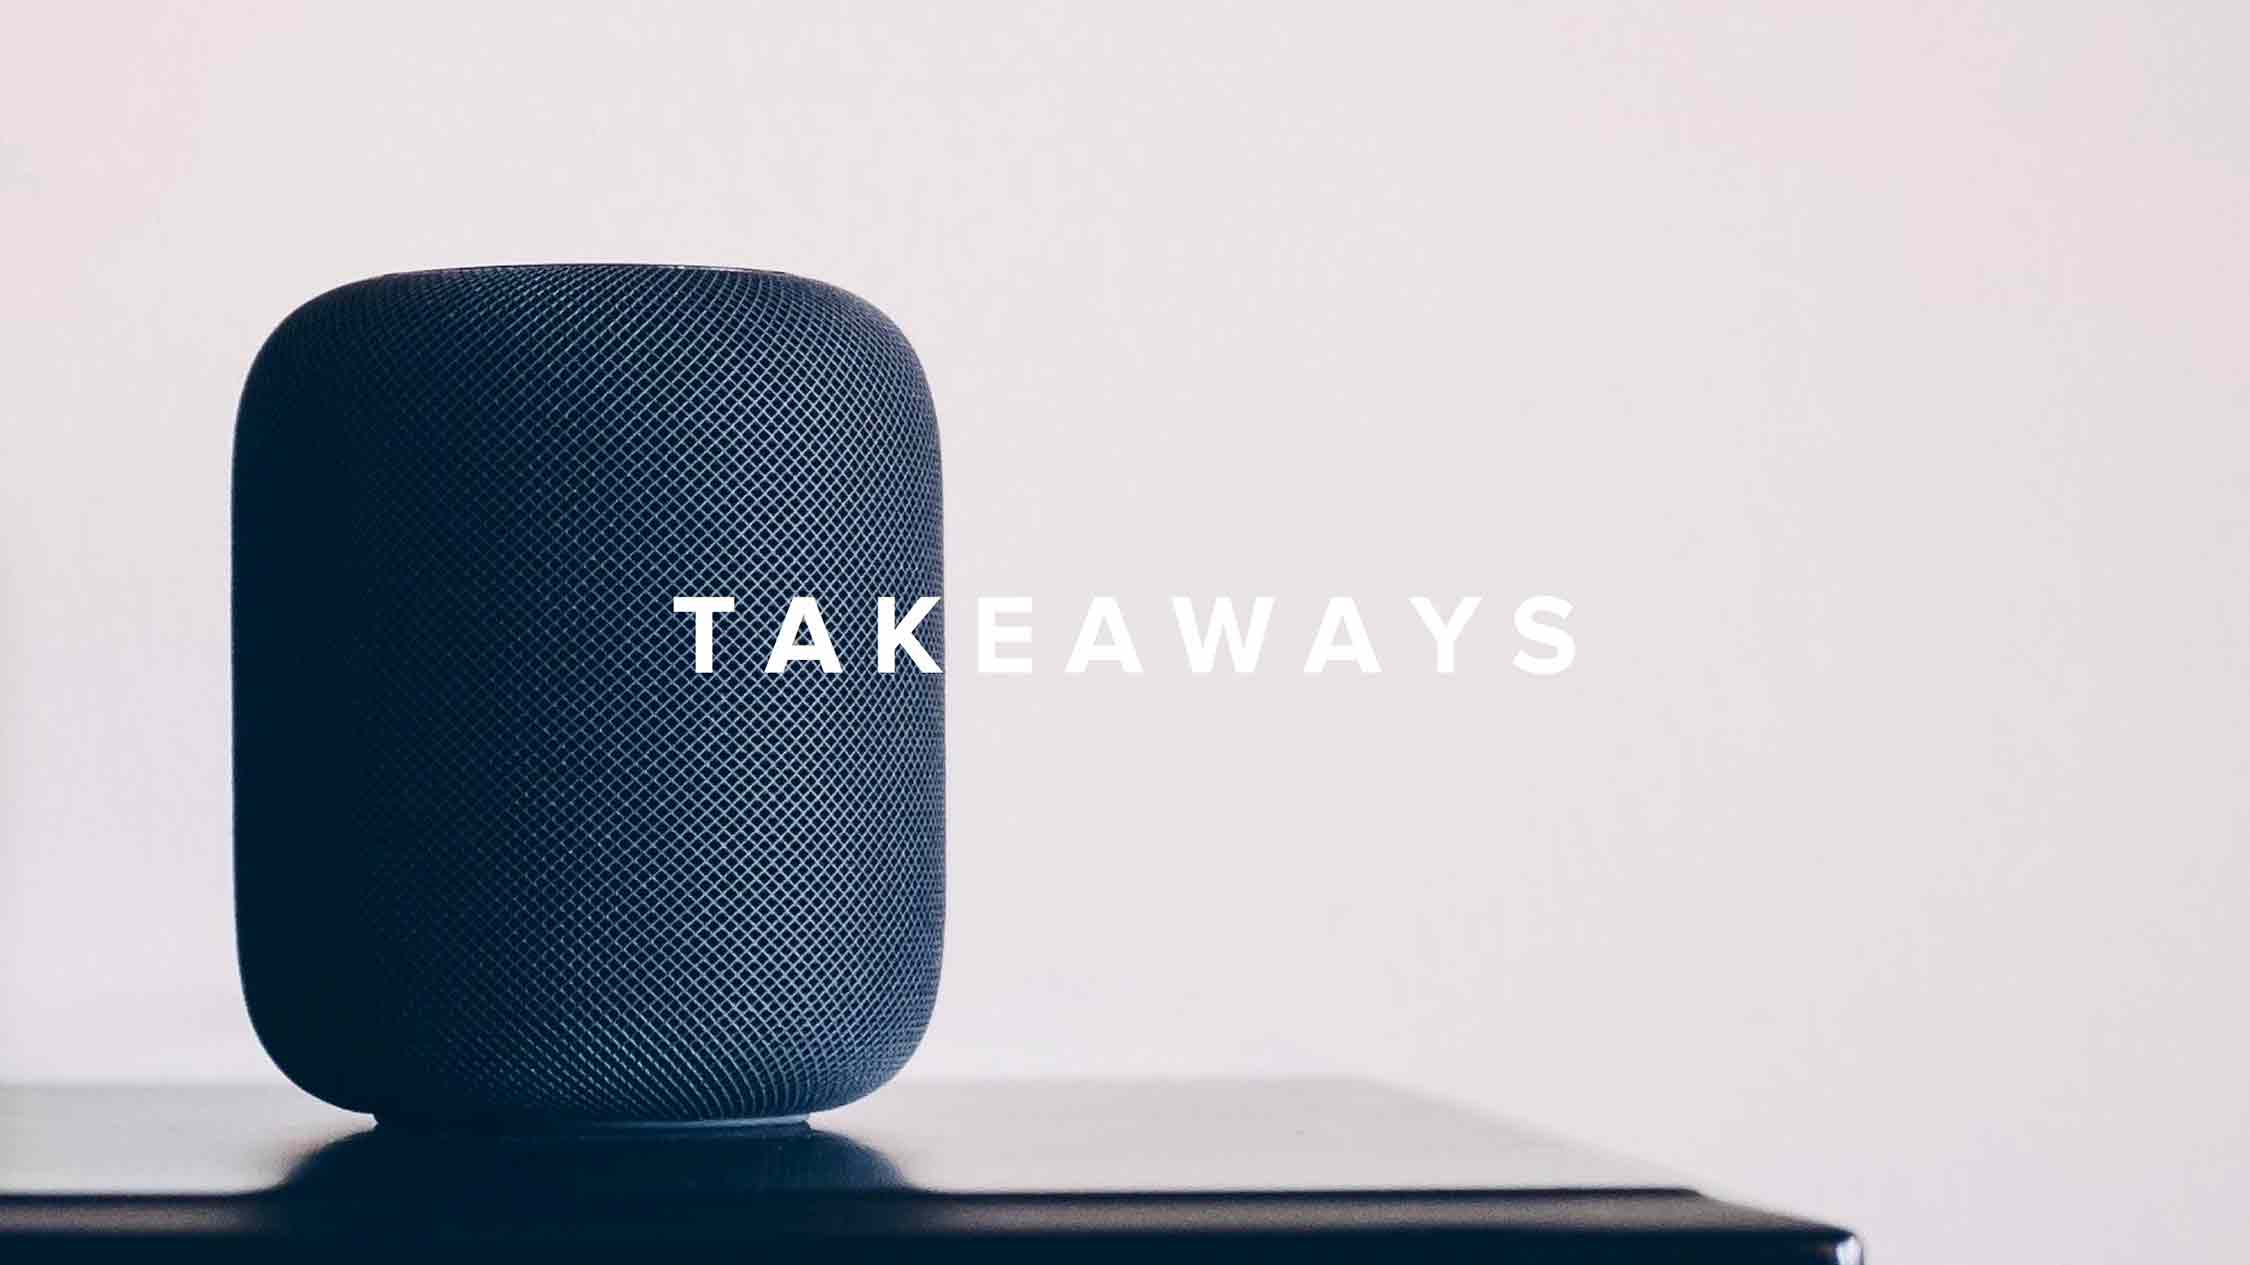 "Takeaways" written atop an Apple HomePod.